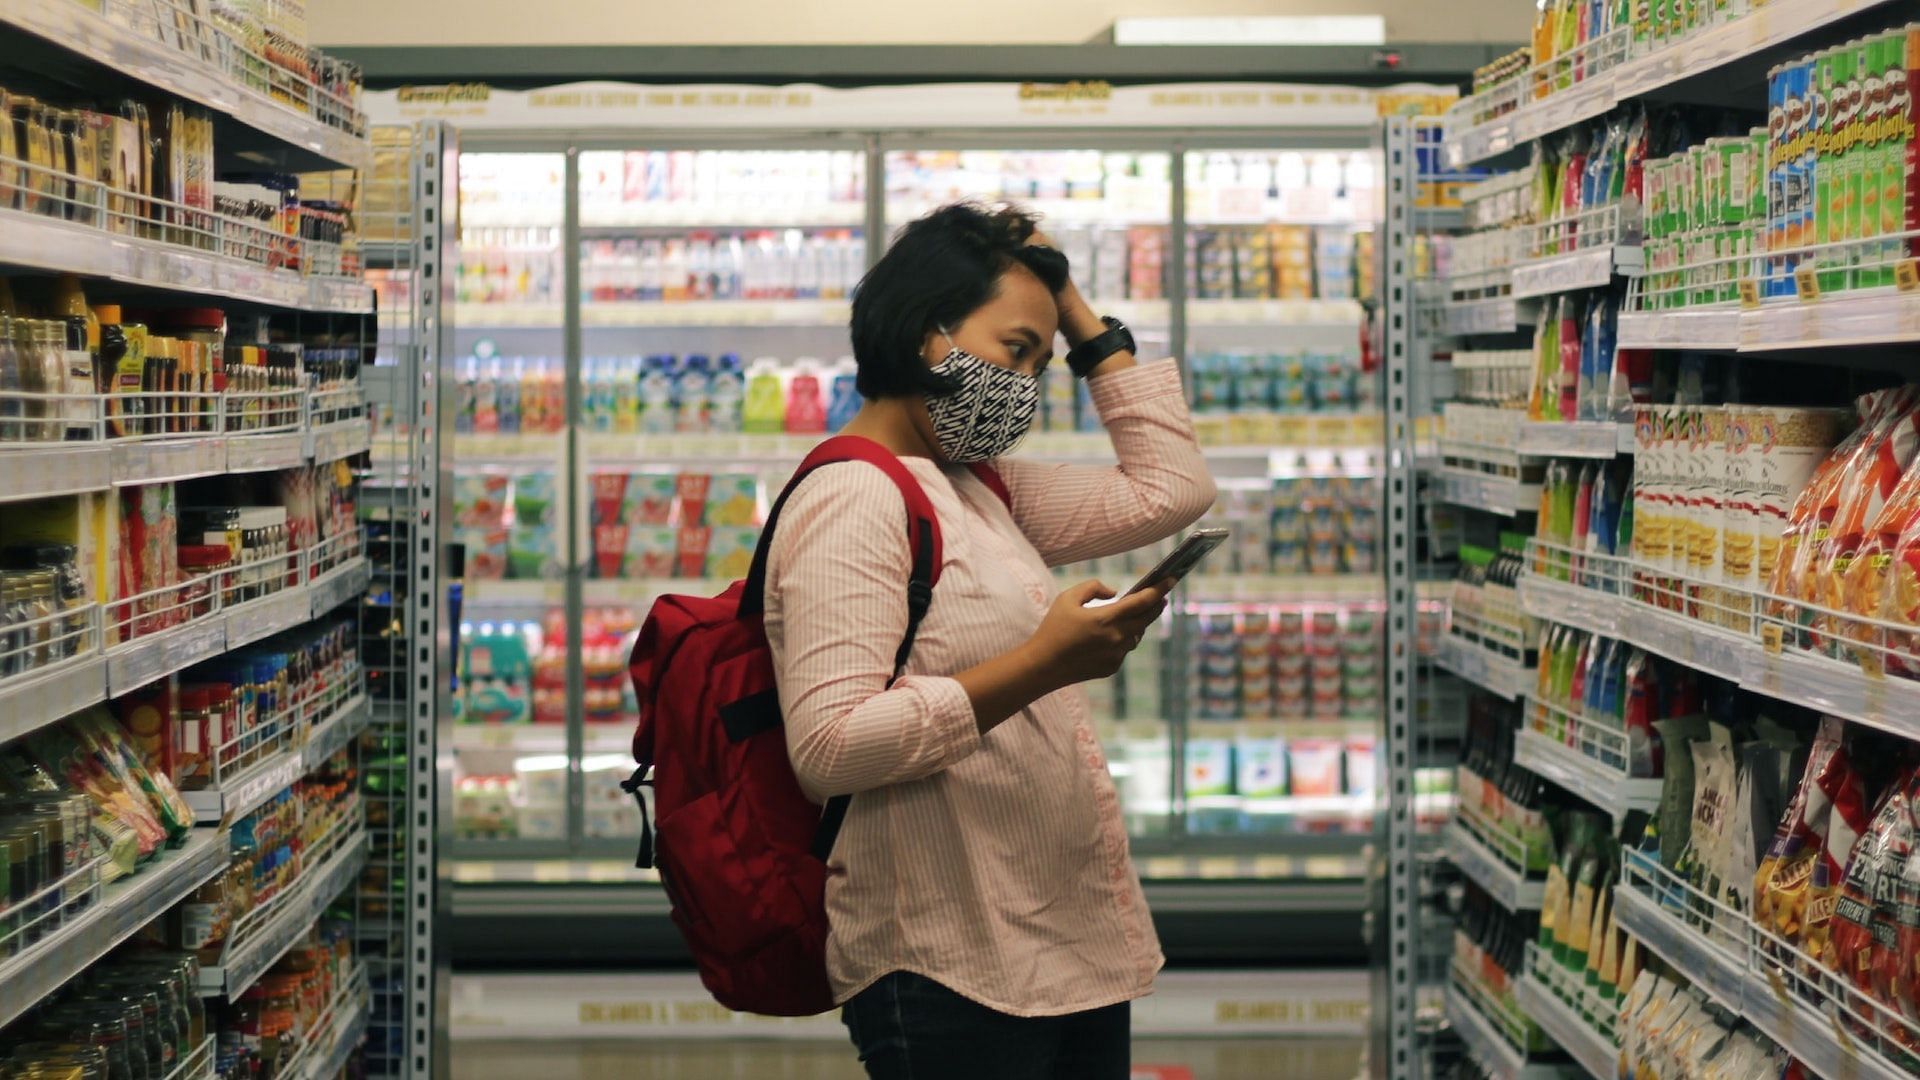 Snacks on the shelves are full of preservatives. Image via Unsplash/Viki Mohamed